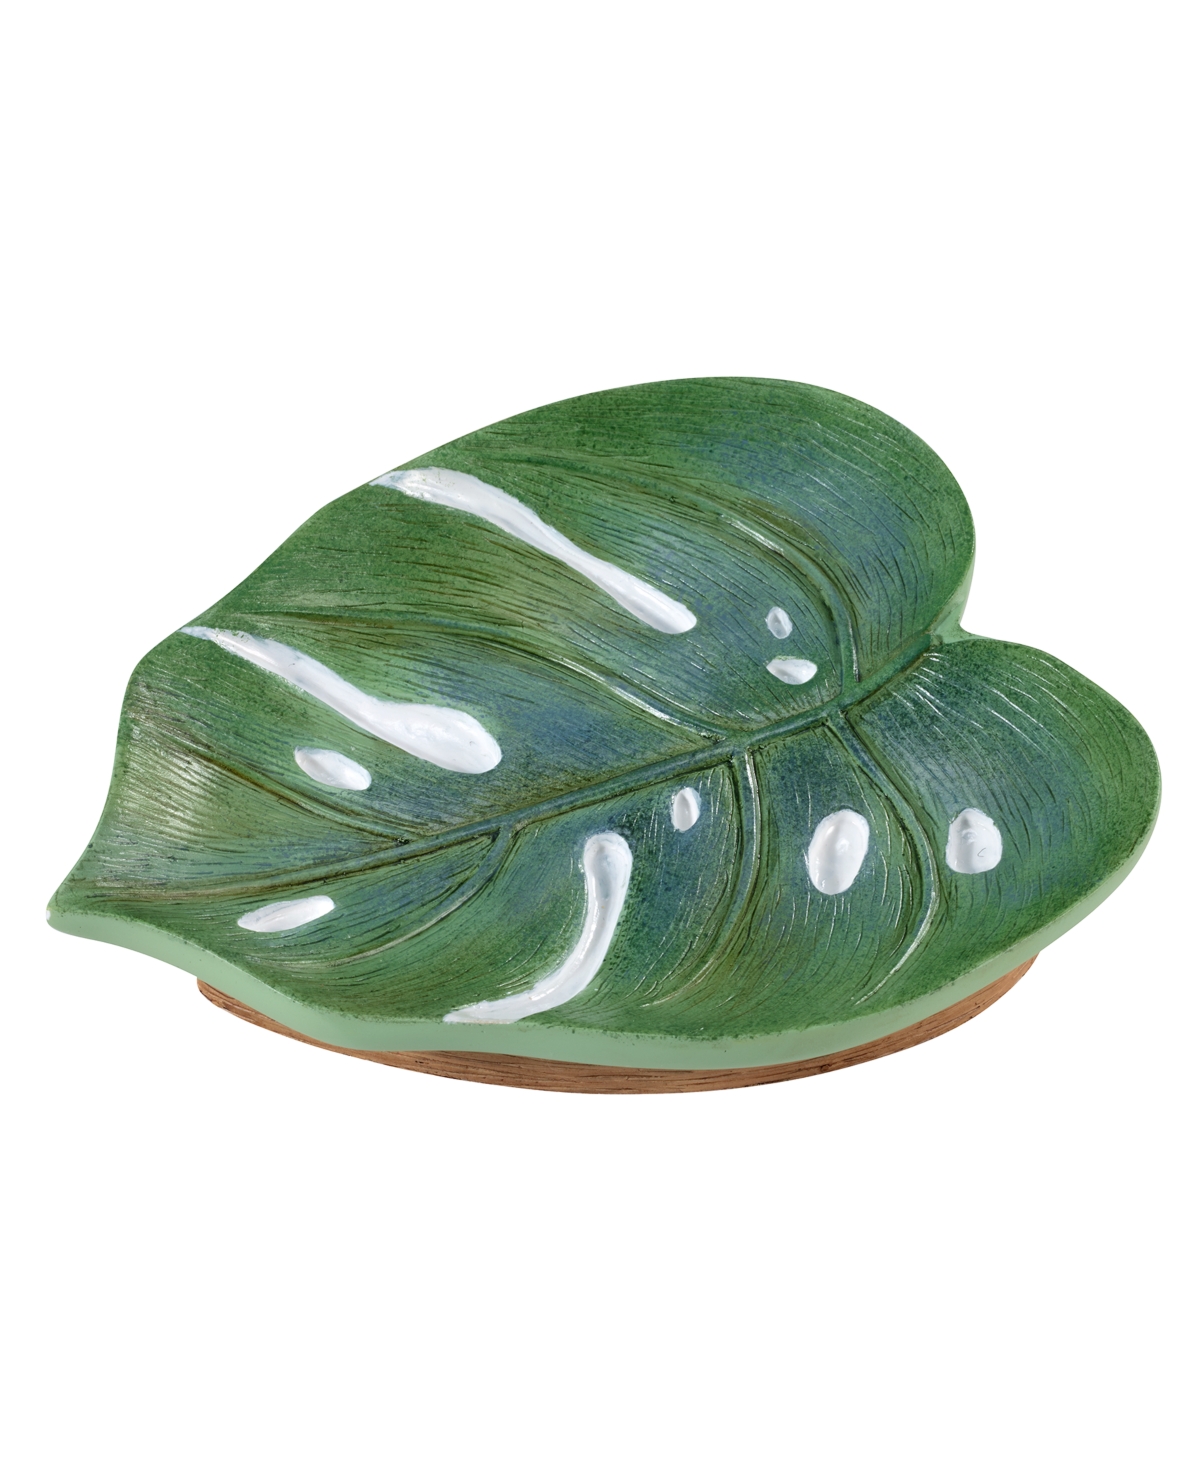 Avanti Viva Palm Soap Dish Bedding In Green